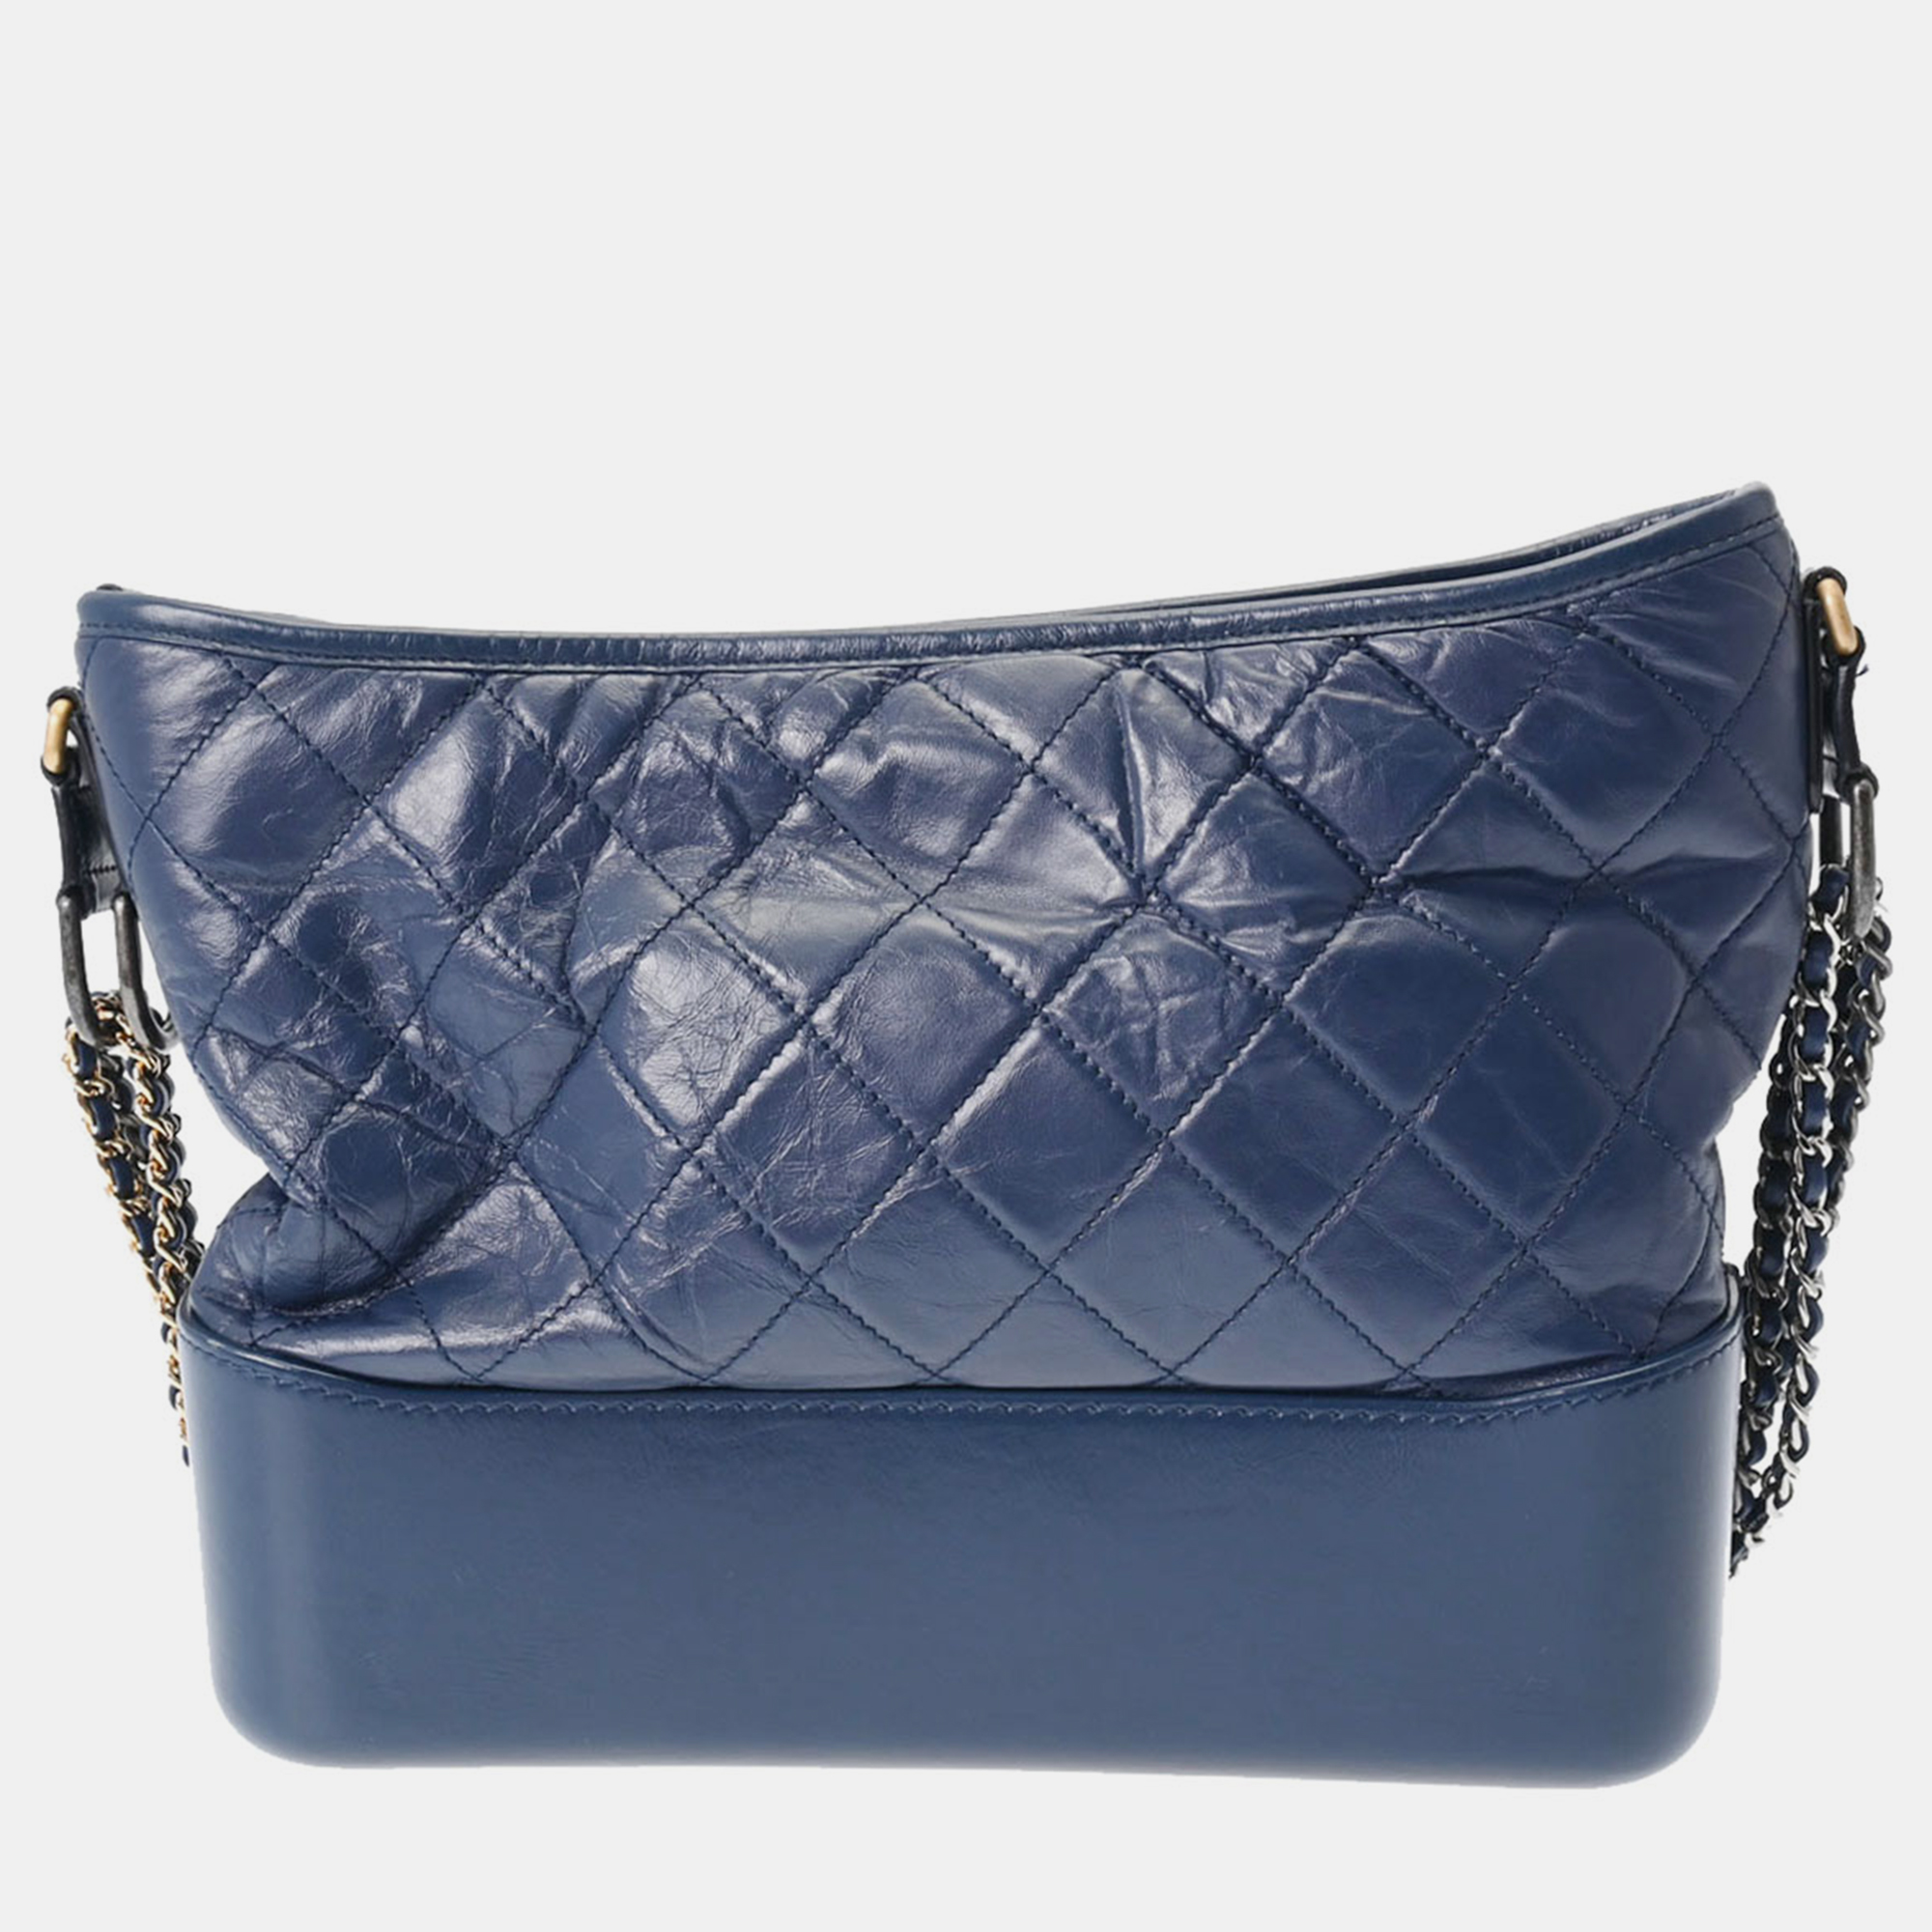 Chanel blue leather large gabrielle shoulder bag